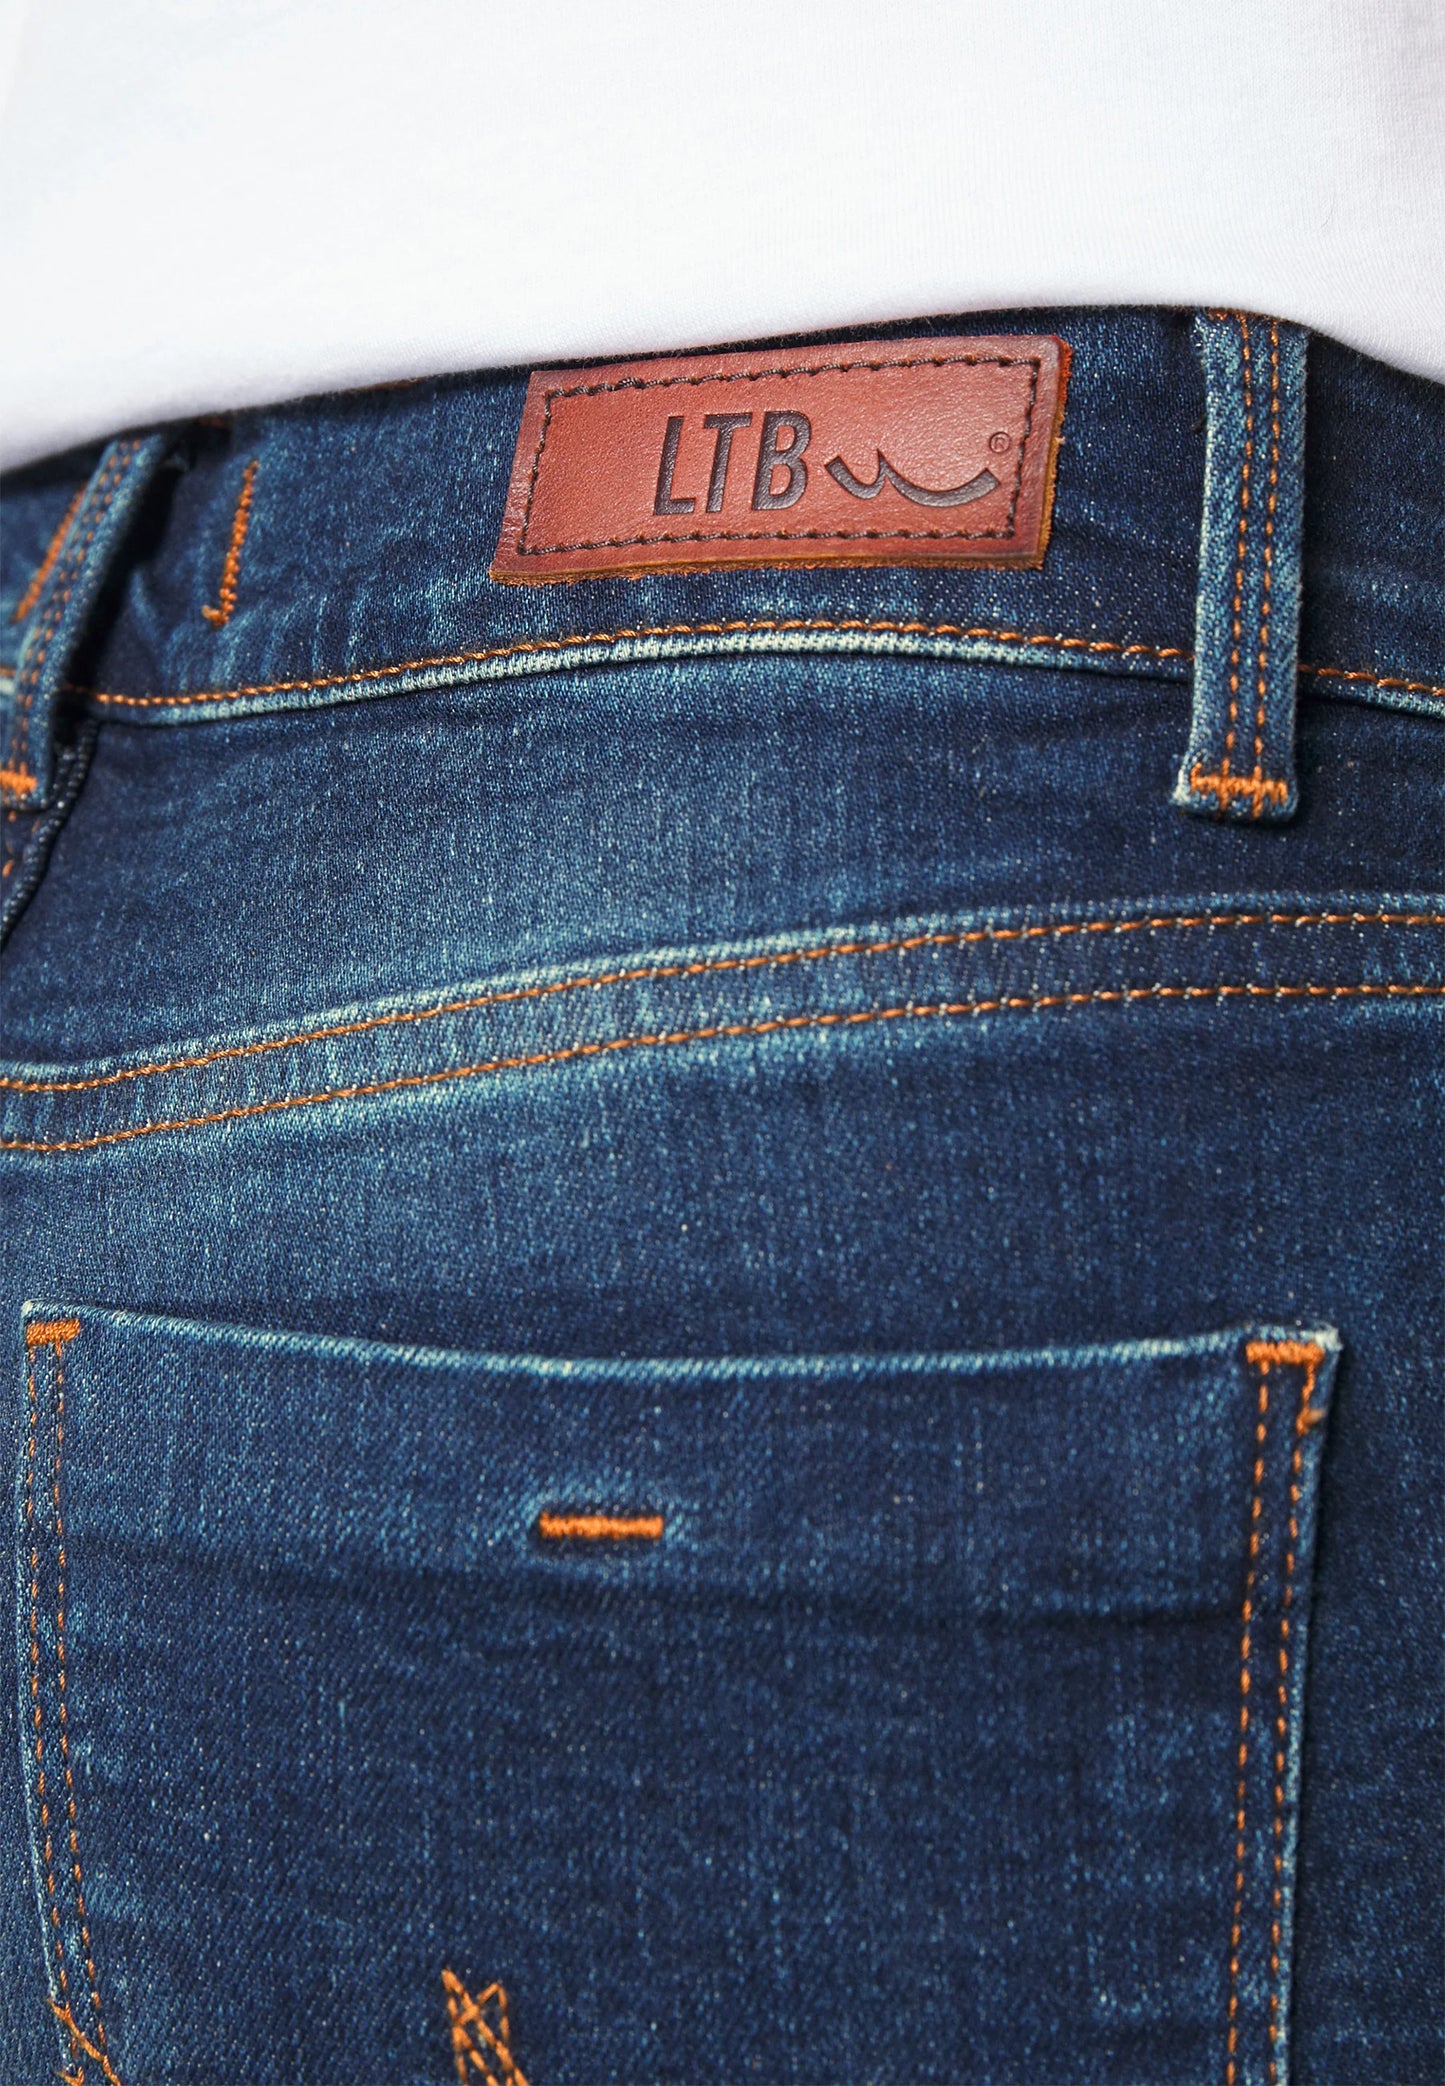 
                  
                    LTB Fallon Morna Undamaged Wash  - Flared Jeans
                  
                